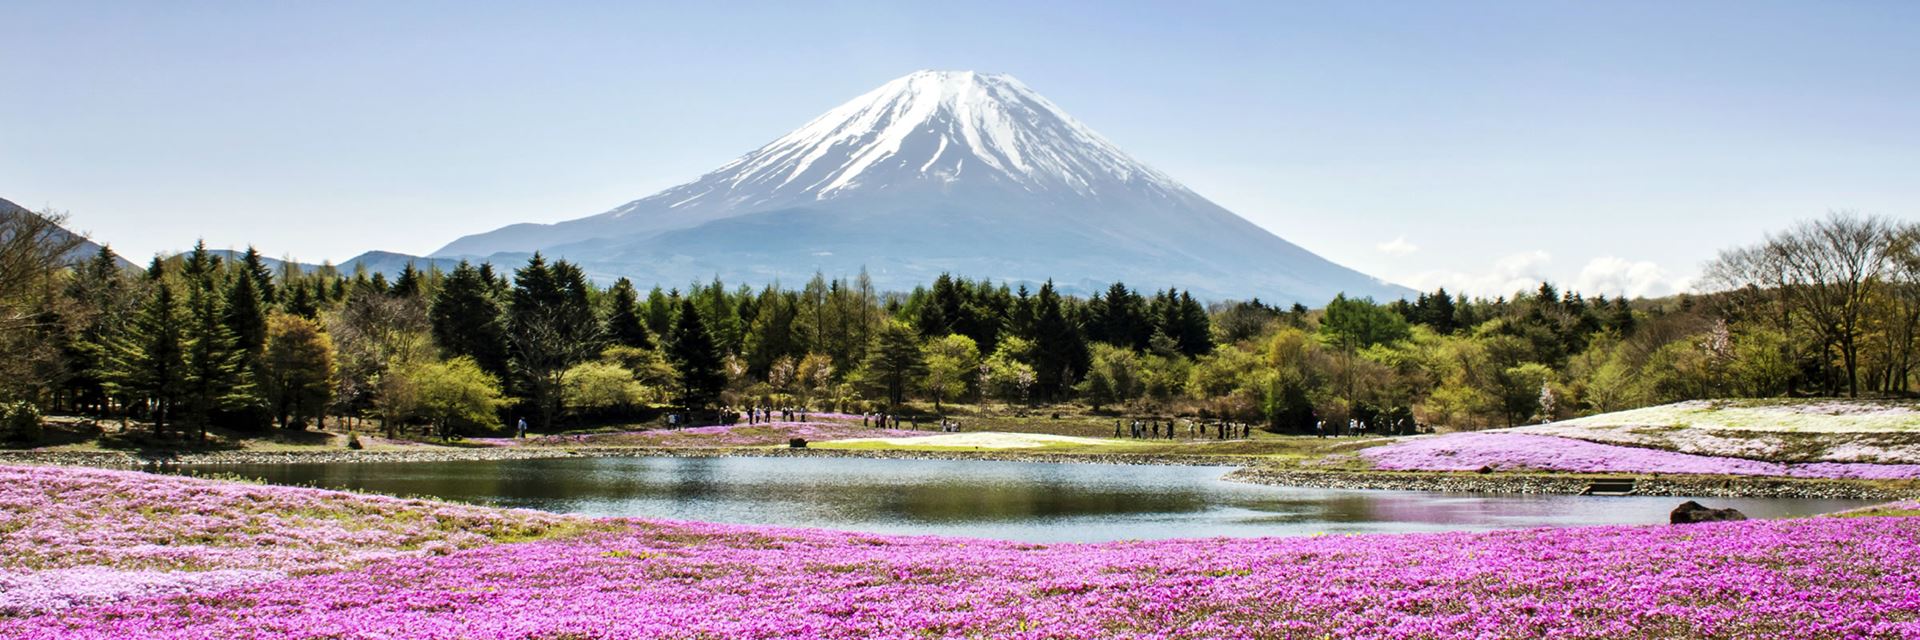 Visit Mt. Fuji